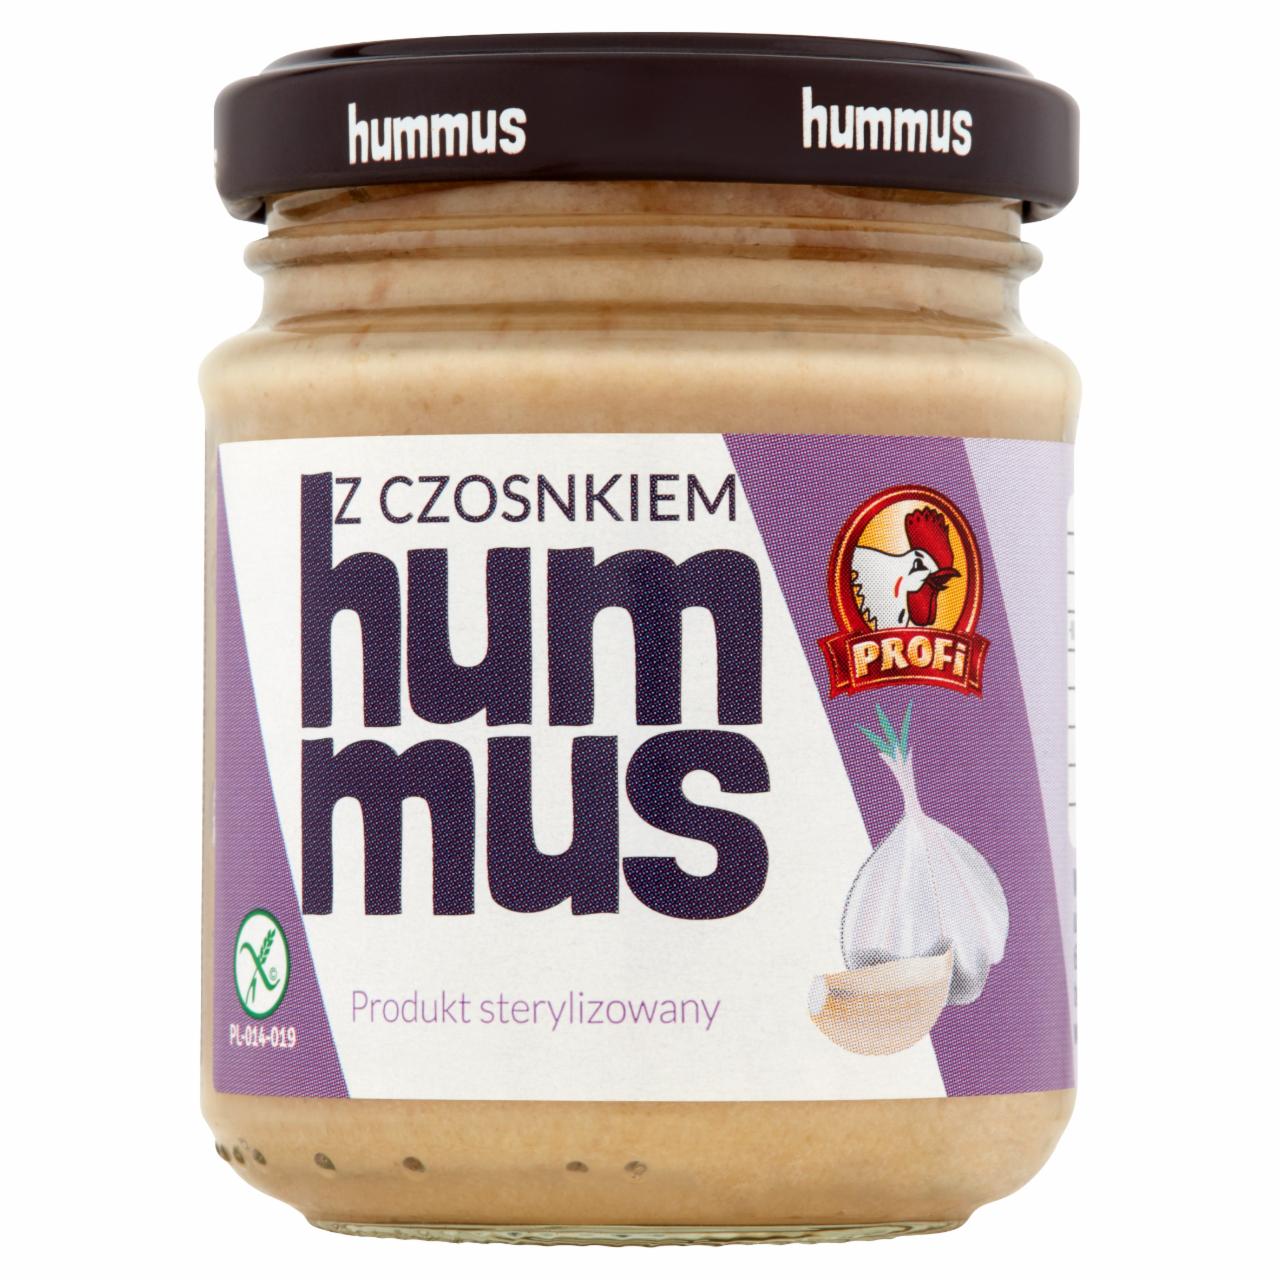 Zdjęcia - Profi Hummus z czosnkiem 105 g